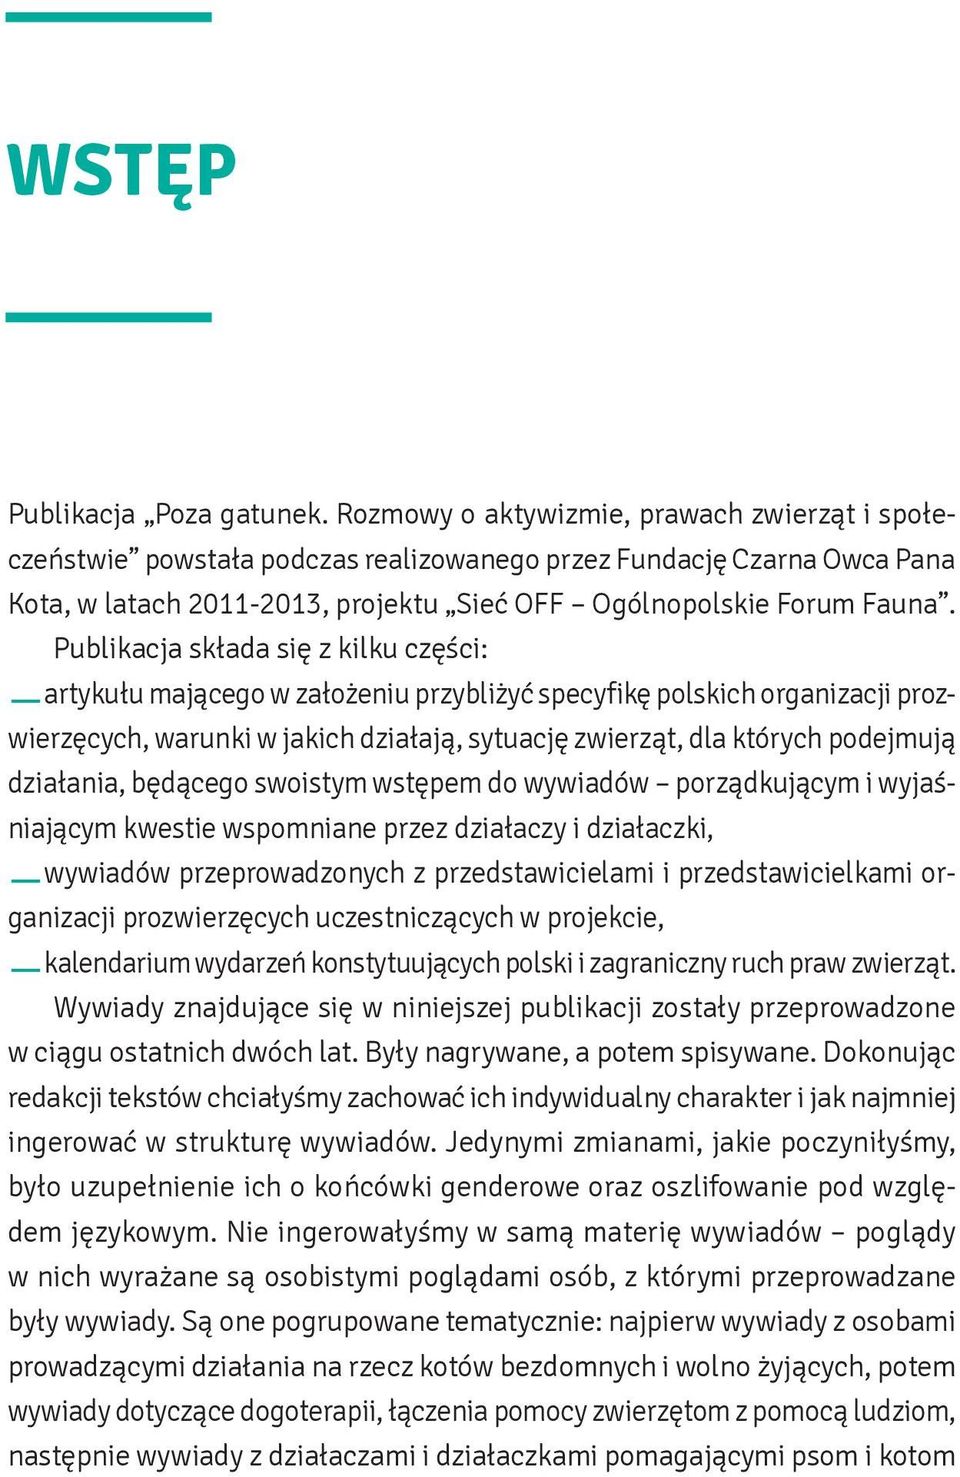 Publikacja składa się z kilku części: artykułu mającego w założeniu przybliżyć specyfikę polskich organizacji prozwierzęcych, warunki w jakich działają, sytuację zwierząt, dla których podejmują